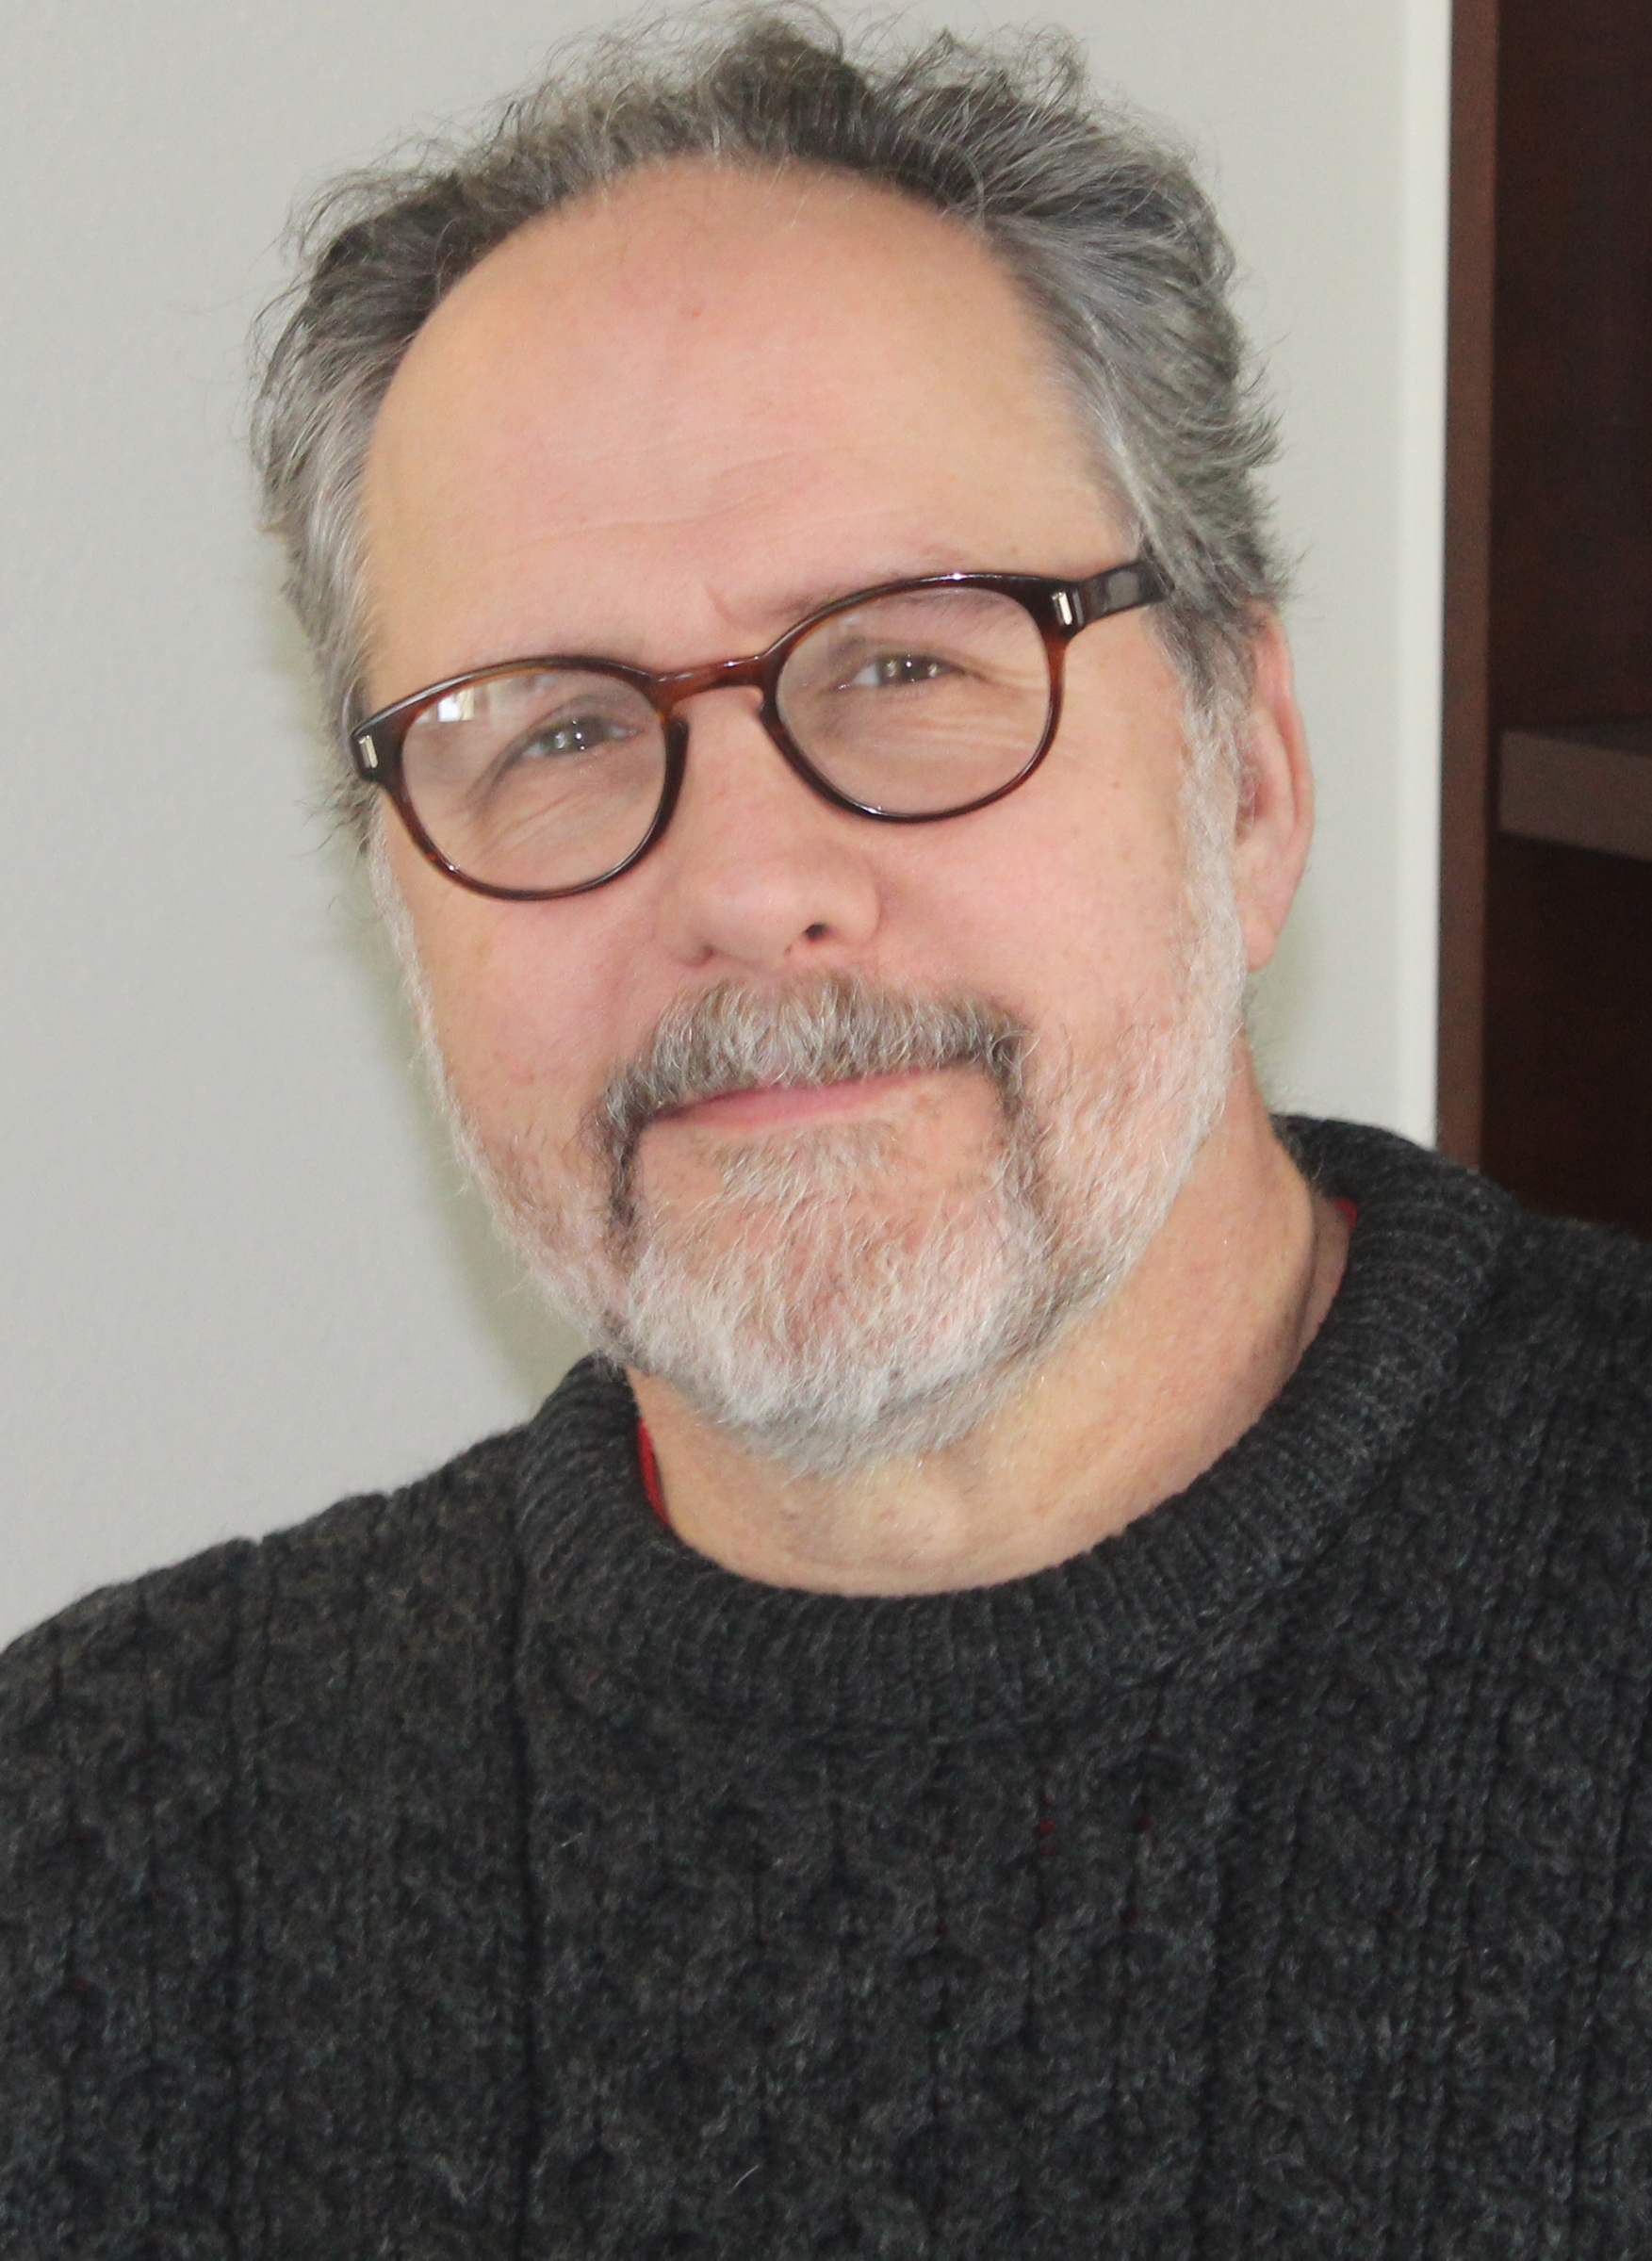 Portrait image of author Mark Baechtel.